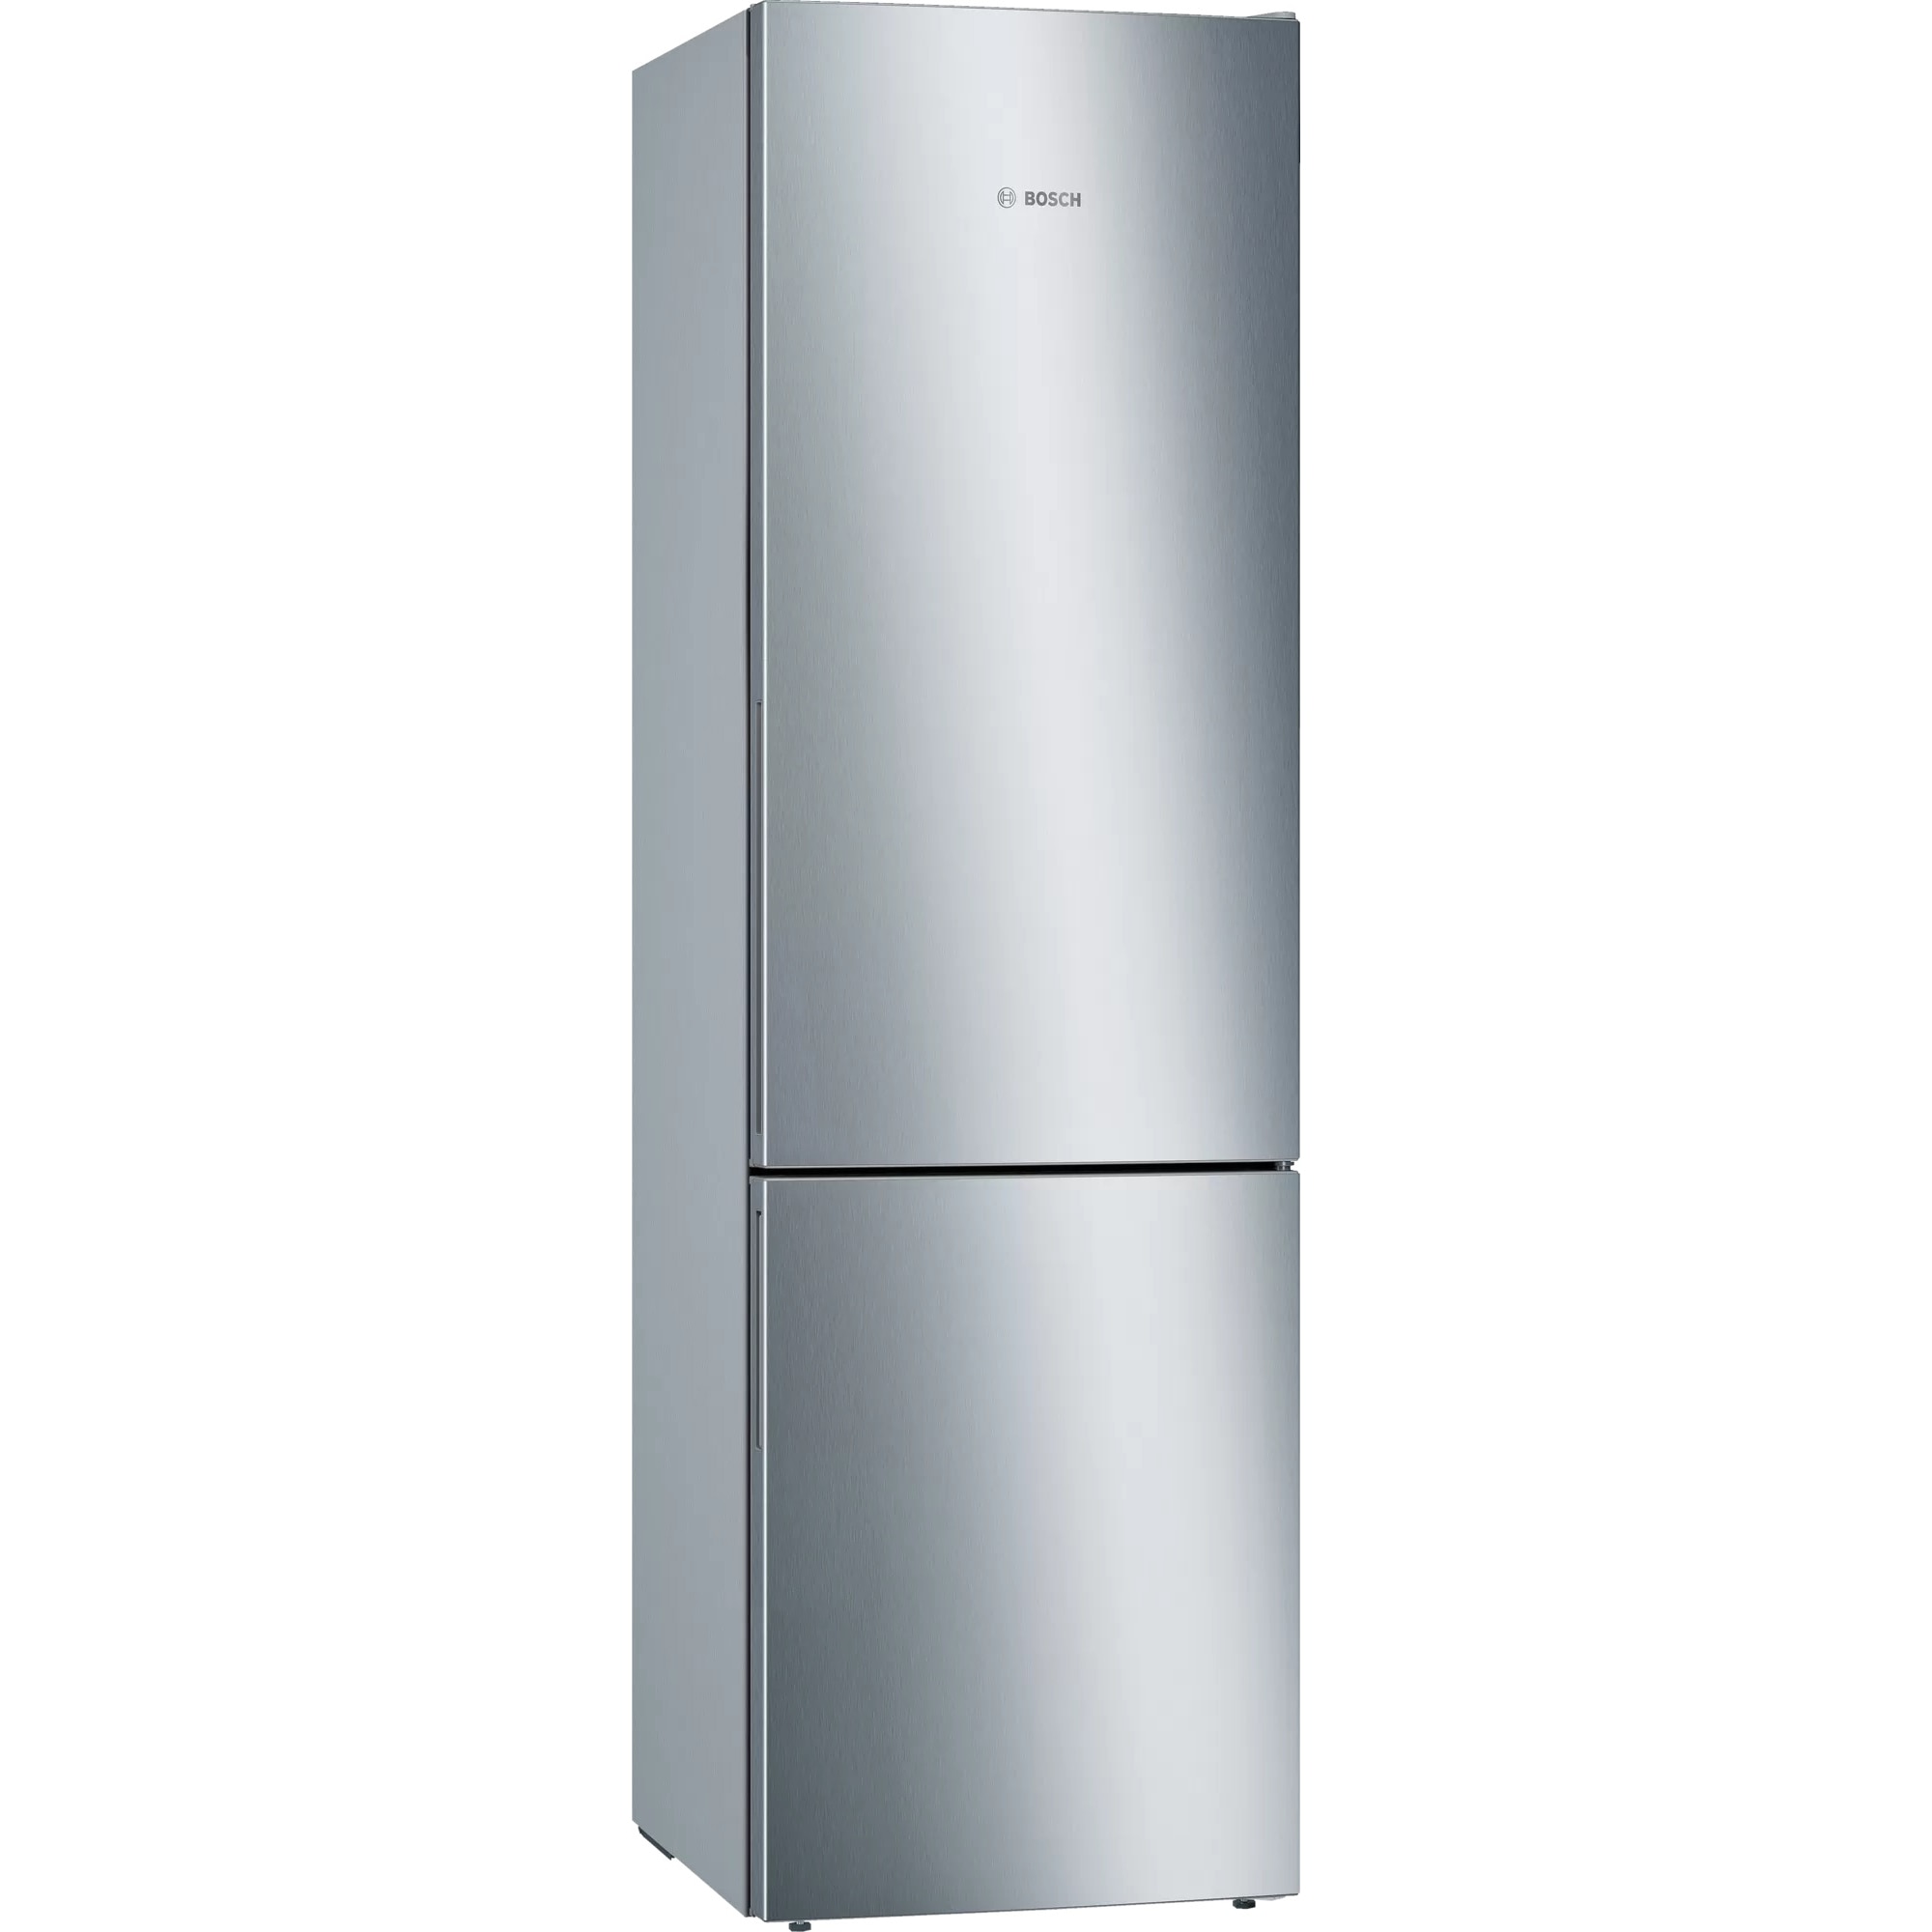 Холодильник двухкамерный купить в москве цена. Холодильник Bosch kgn49xi20r. Холодильник Bosch kgn39vl24r. Bosch kgn36vp14r. Холодильник Bosch kgn39xl.